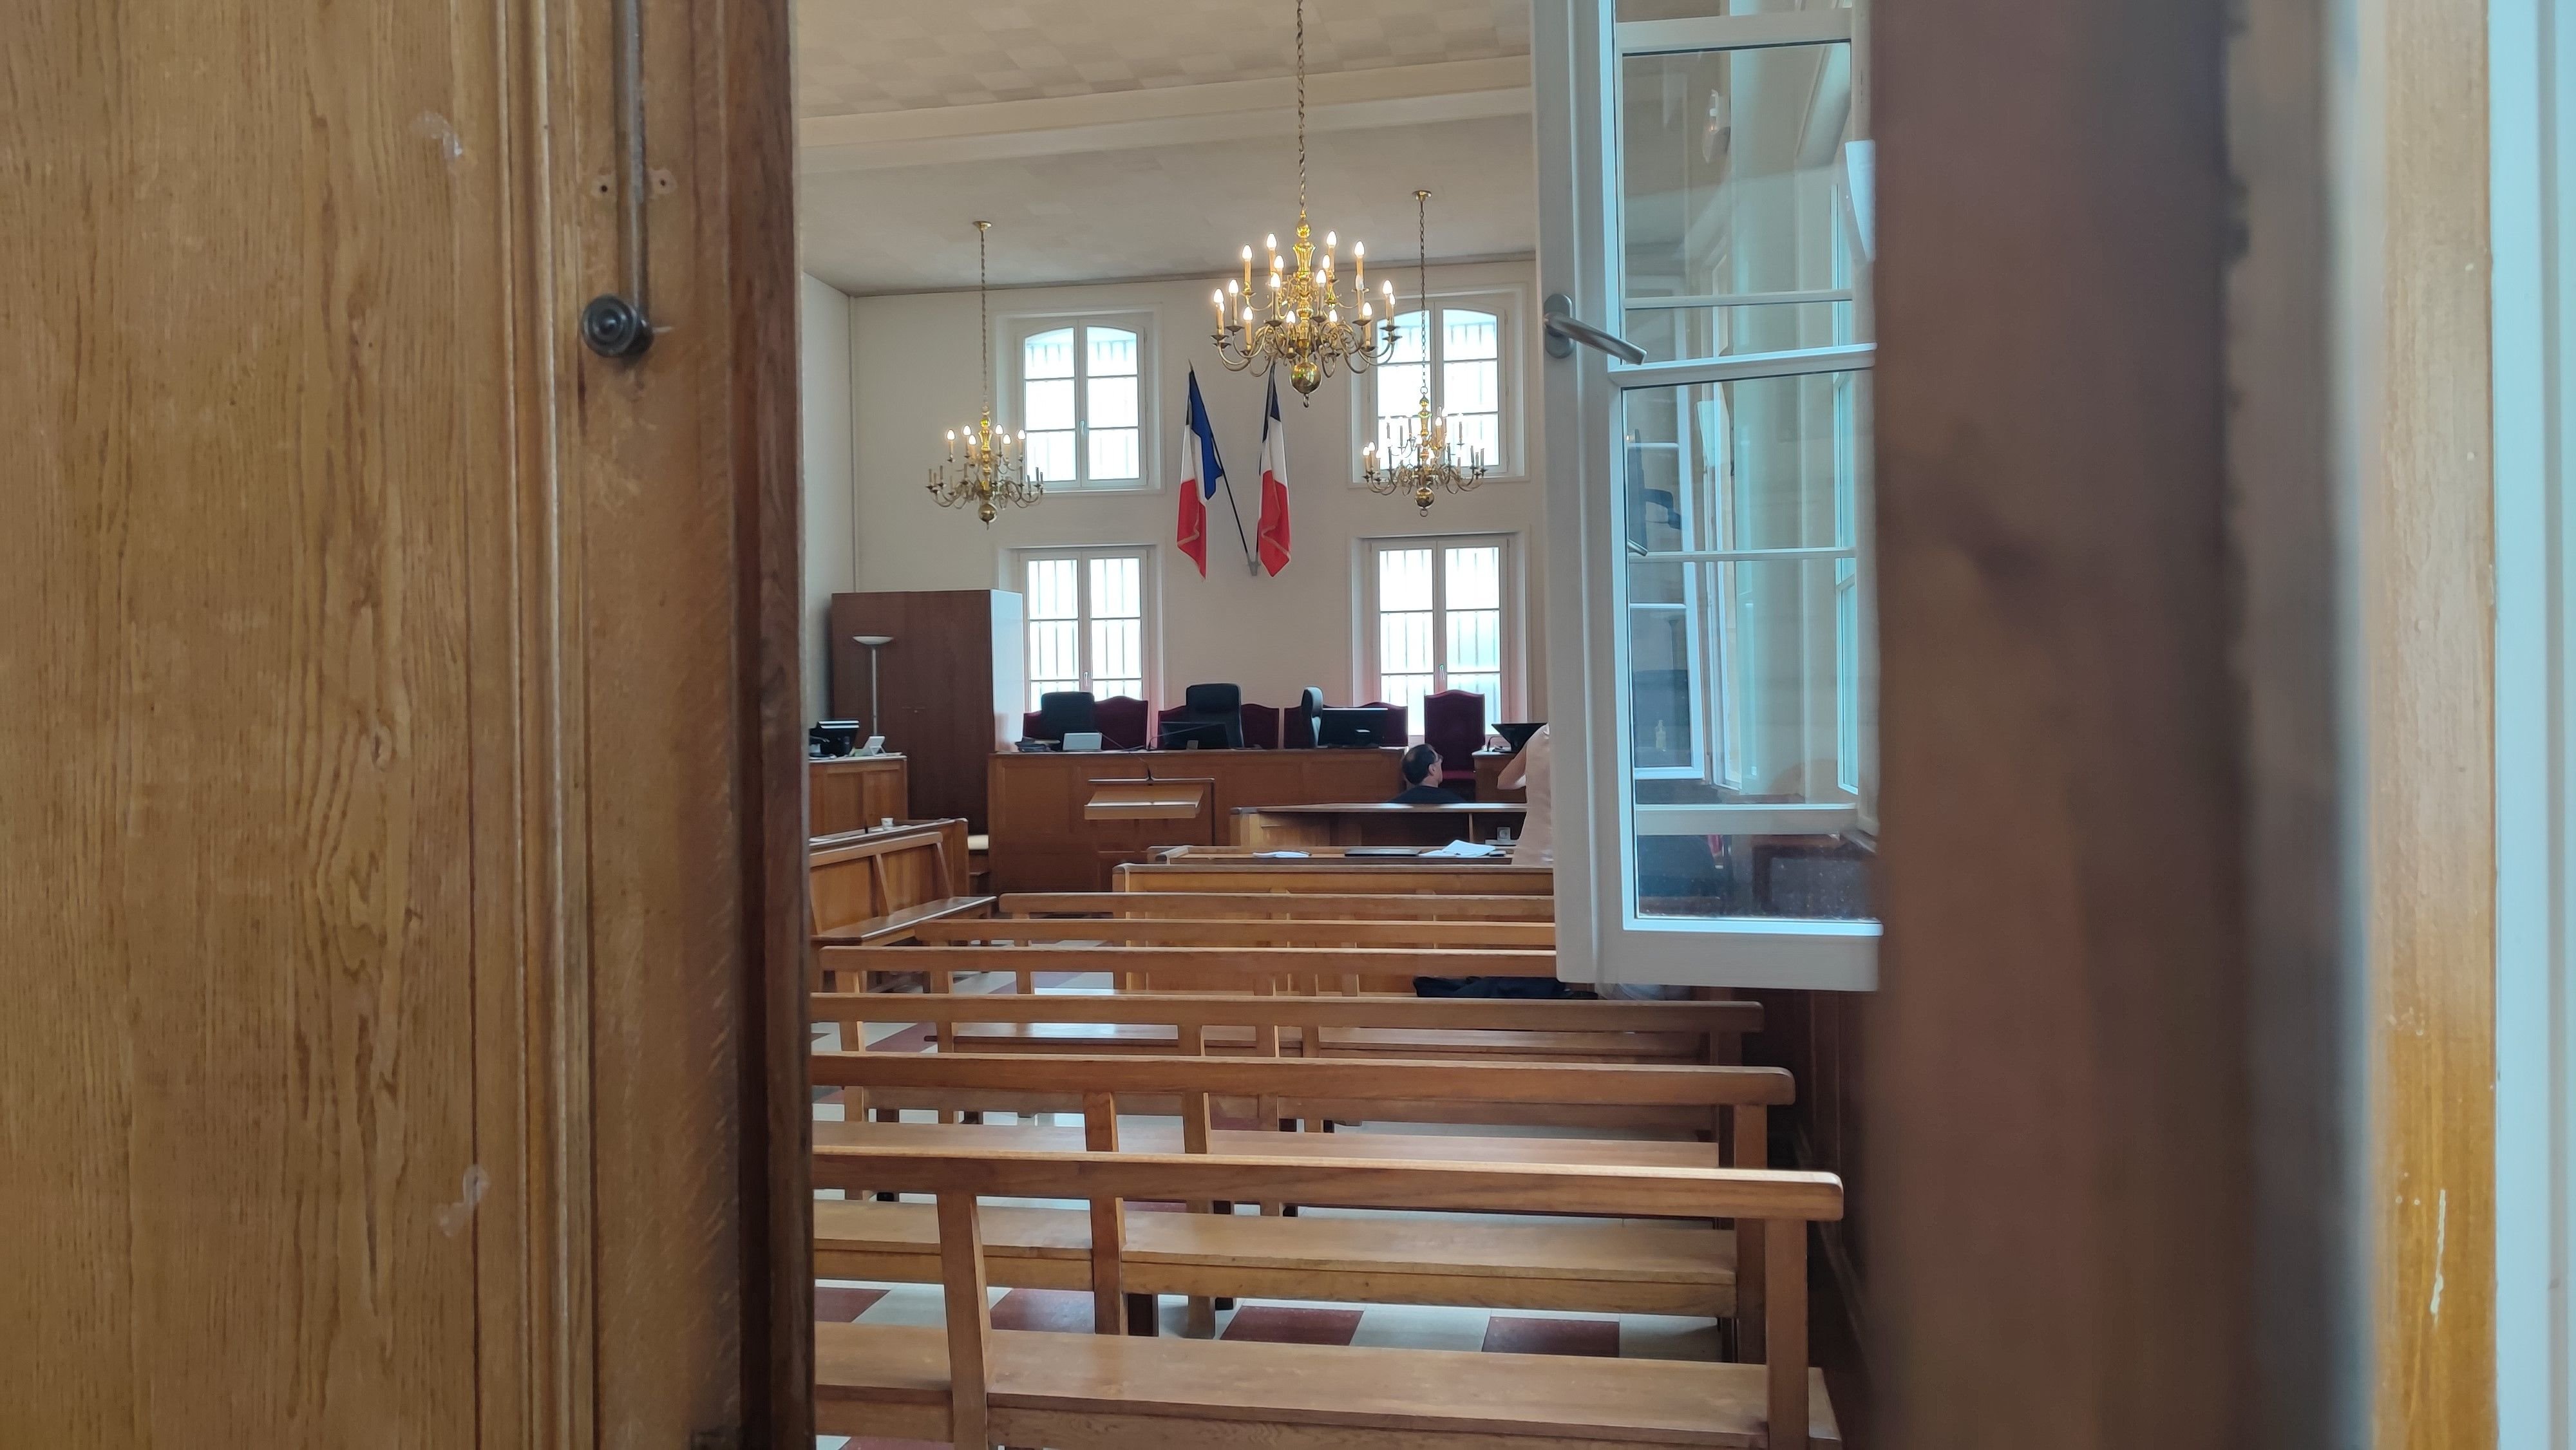 L'homme a été jugé ce jeudi au tribunal de Compiègne (Archives). LP/S.F.